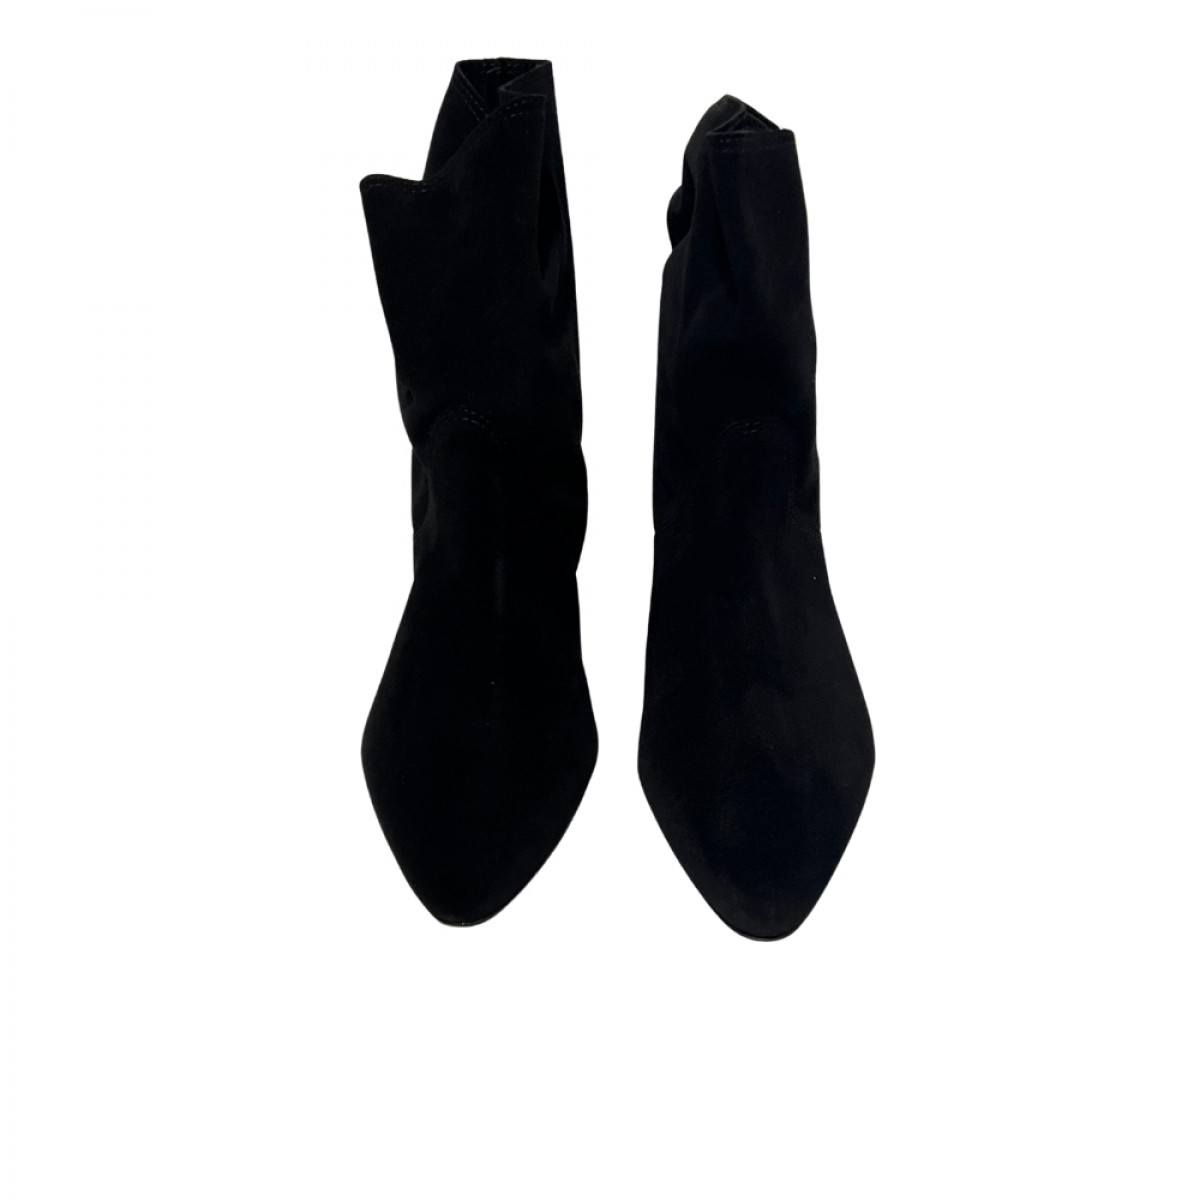 slaine boots - black - front